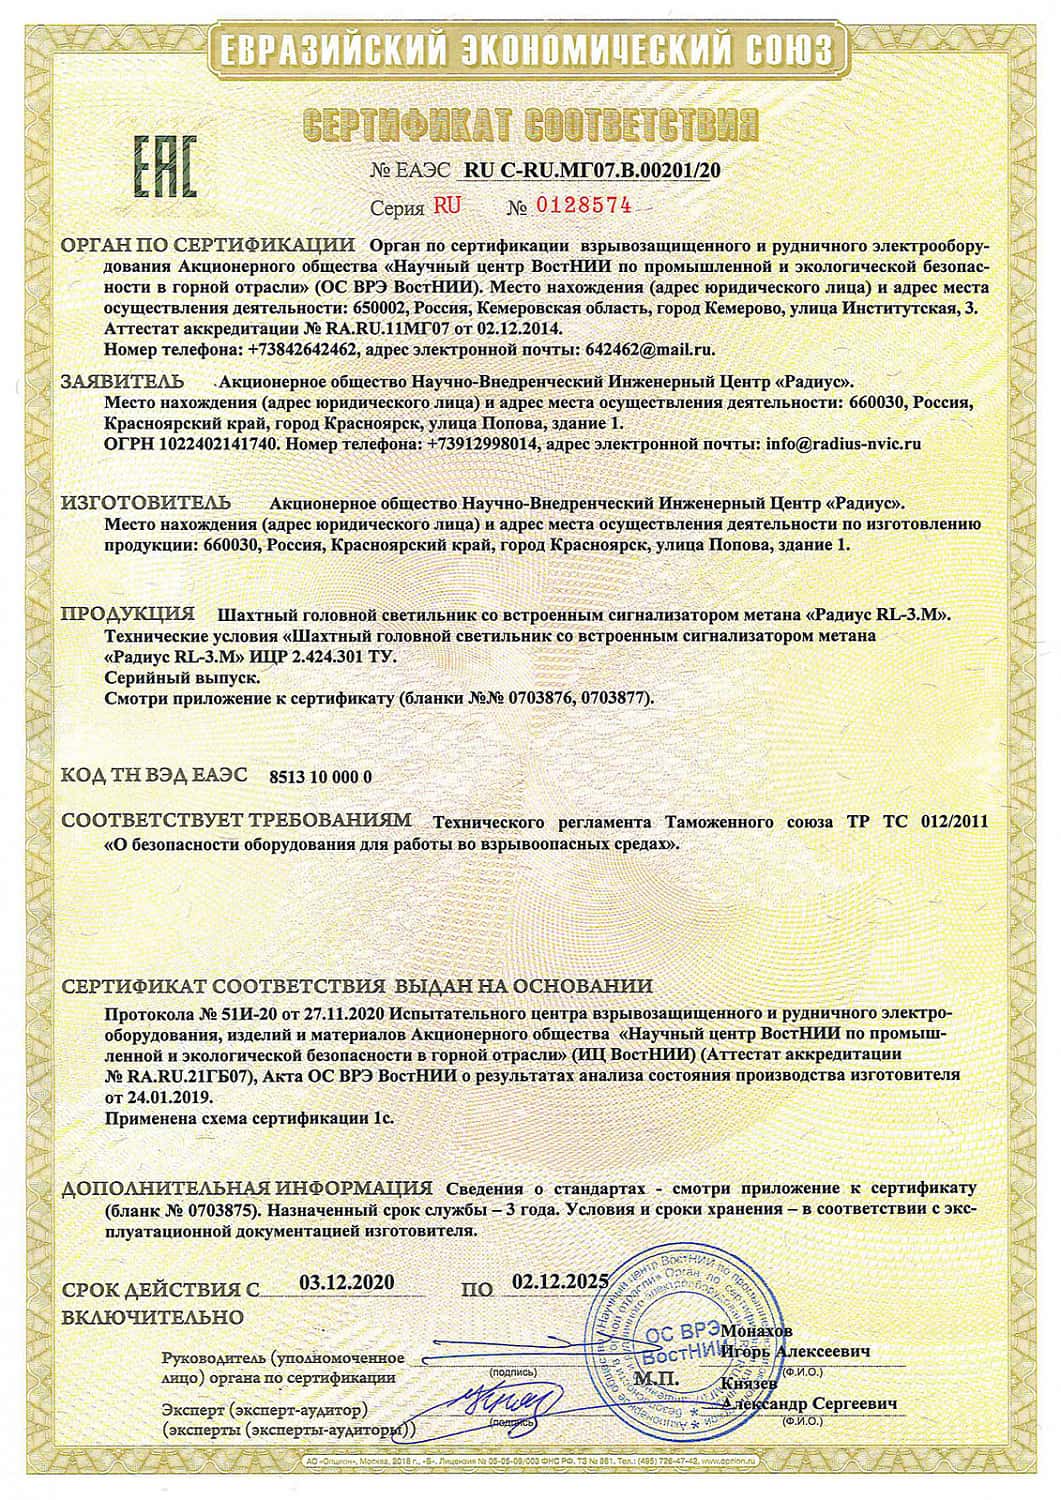 Получен сертификат на шахтный головной светильник со встроенным сигнализатором метана «Радиус RL-3.M». Скачать сертификат можно в разделе документация.